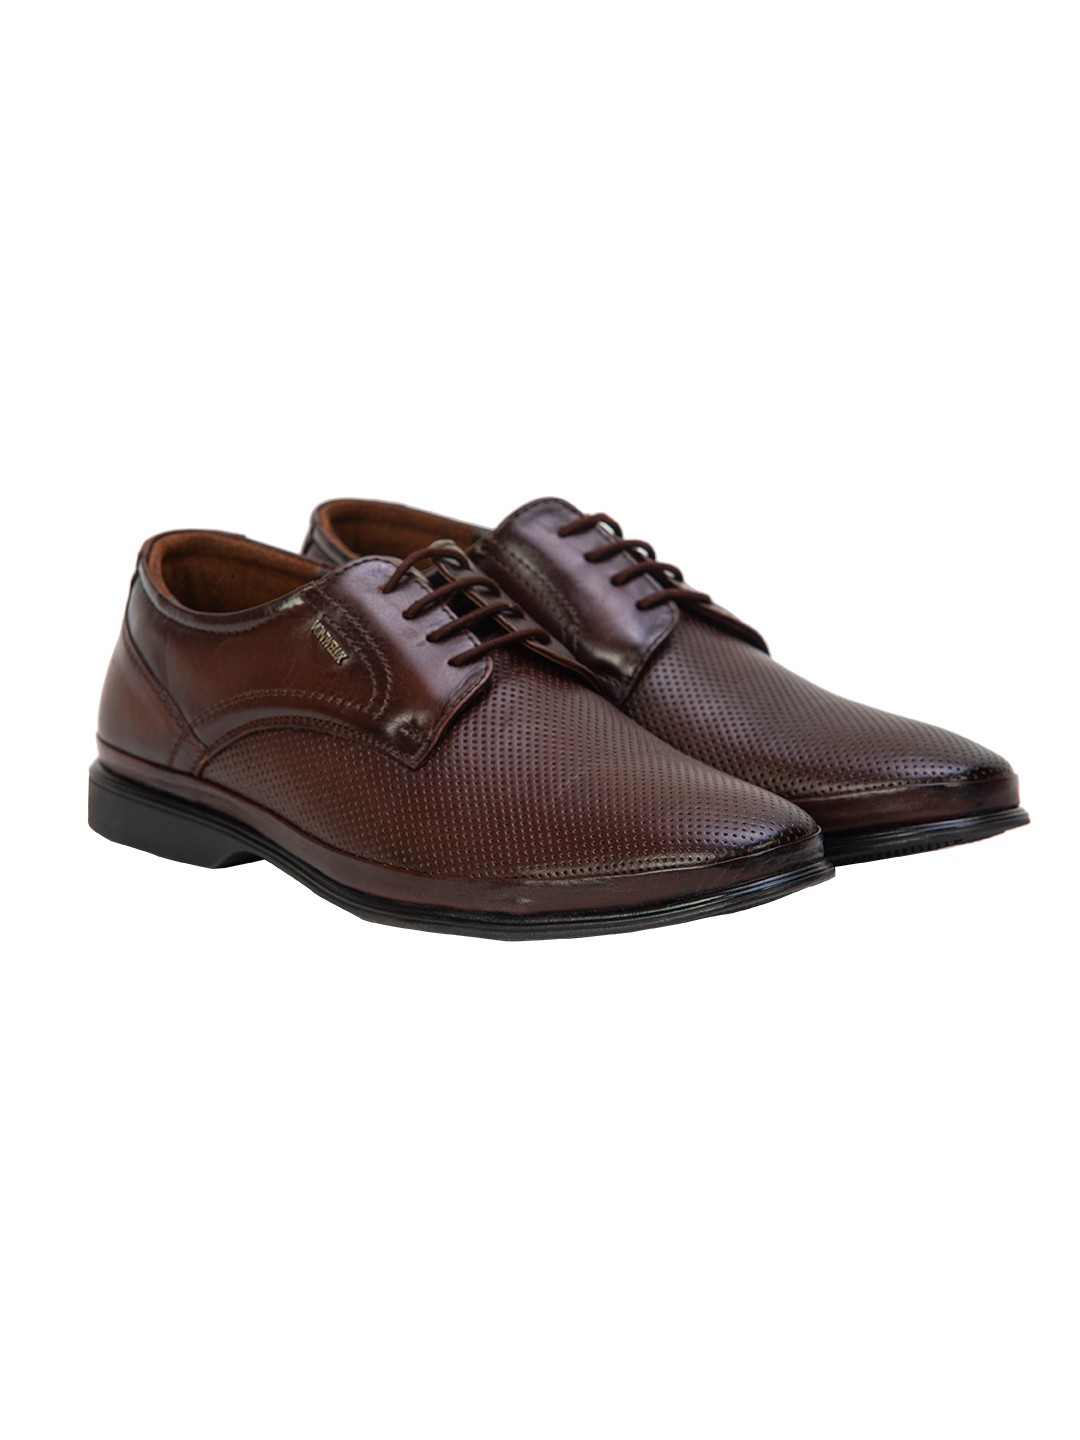 Buy Von Wellx Germany Comfort Coen Brown Shoes Online in Sohar